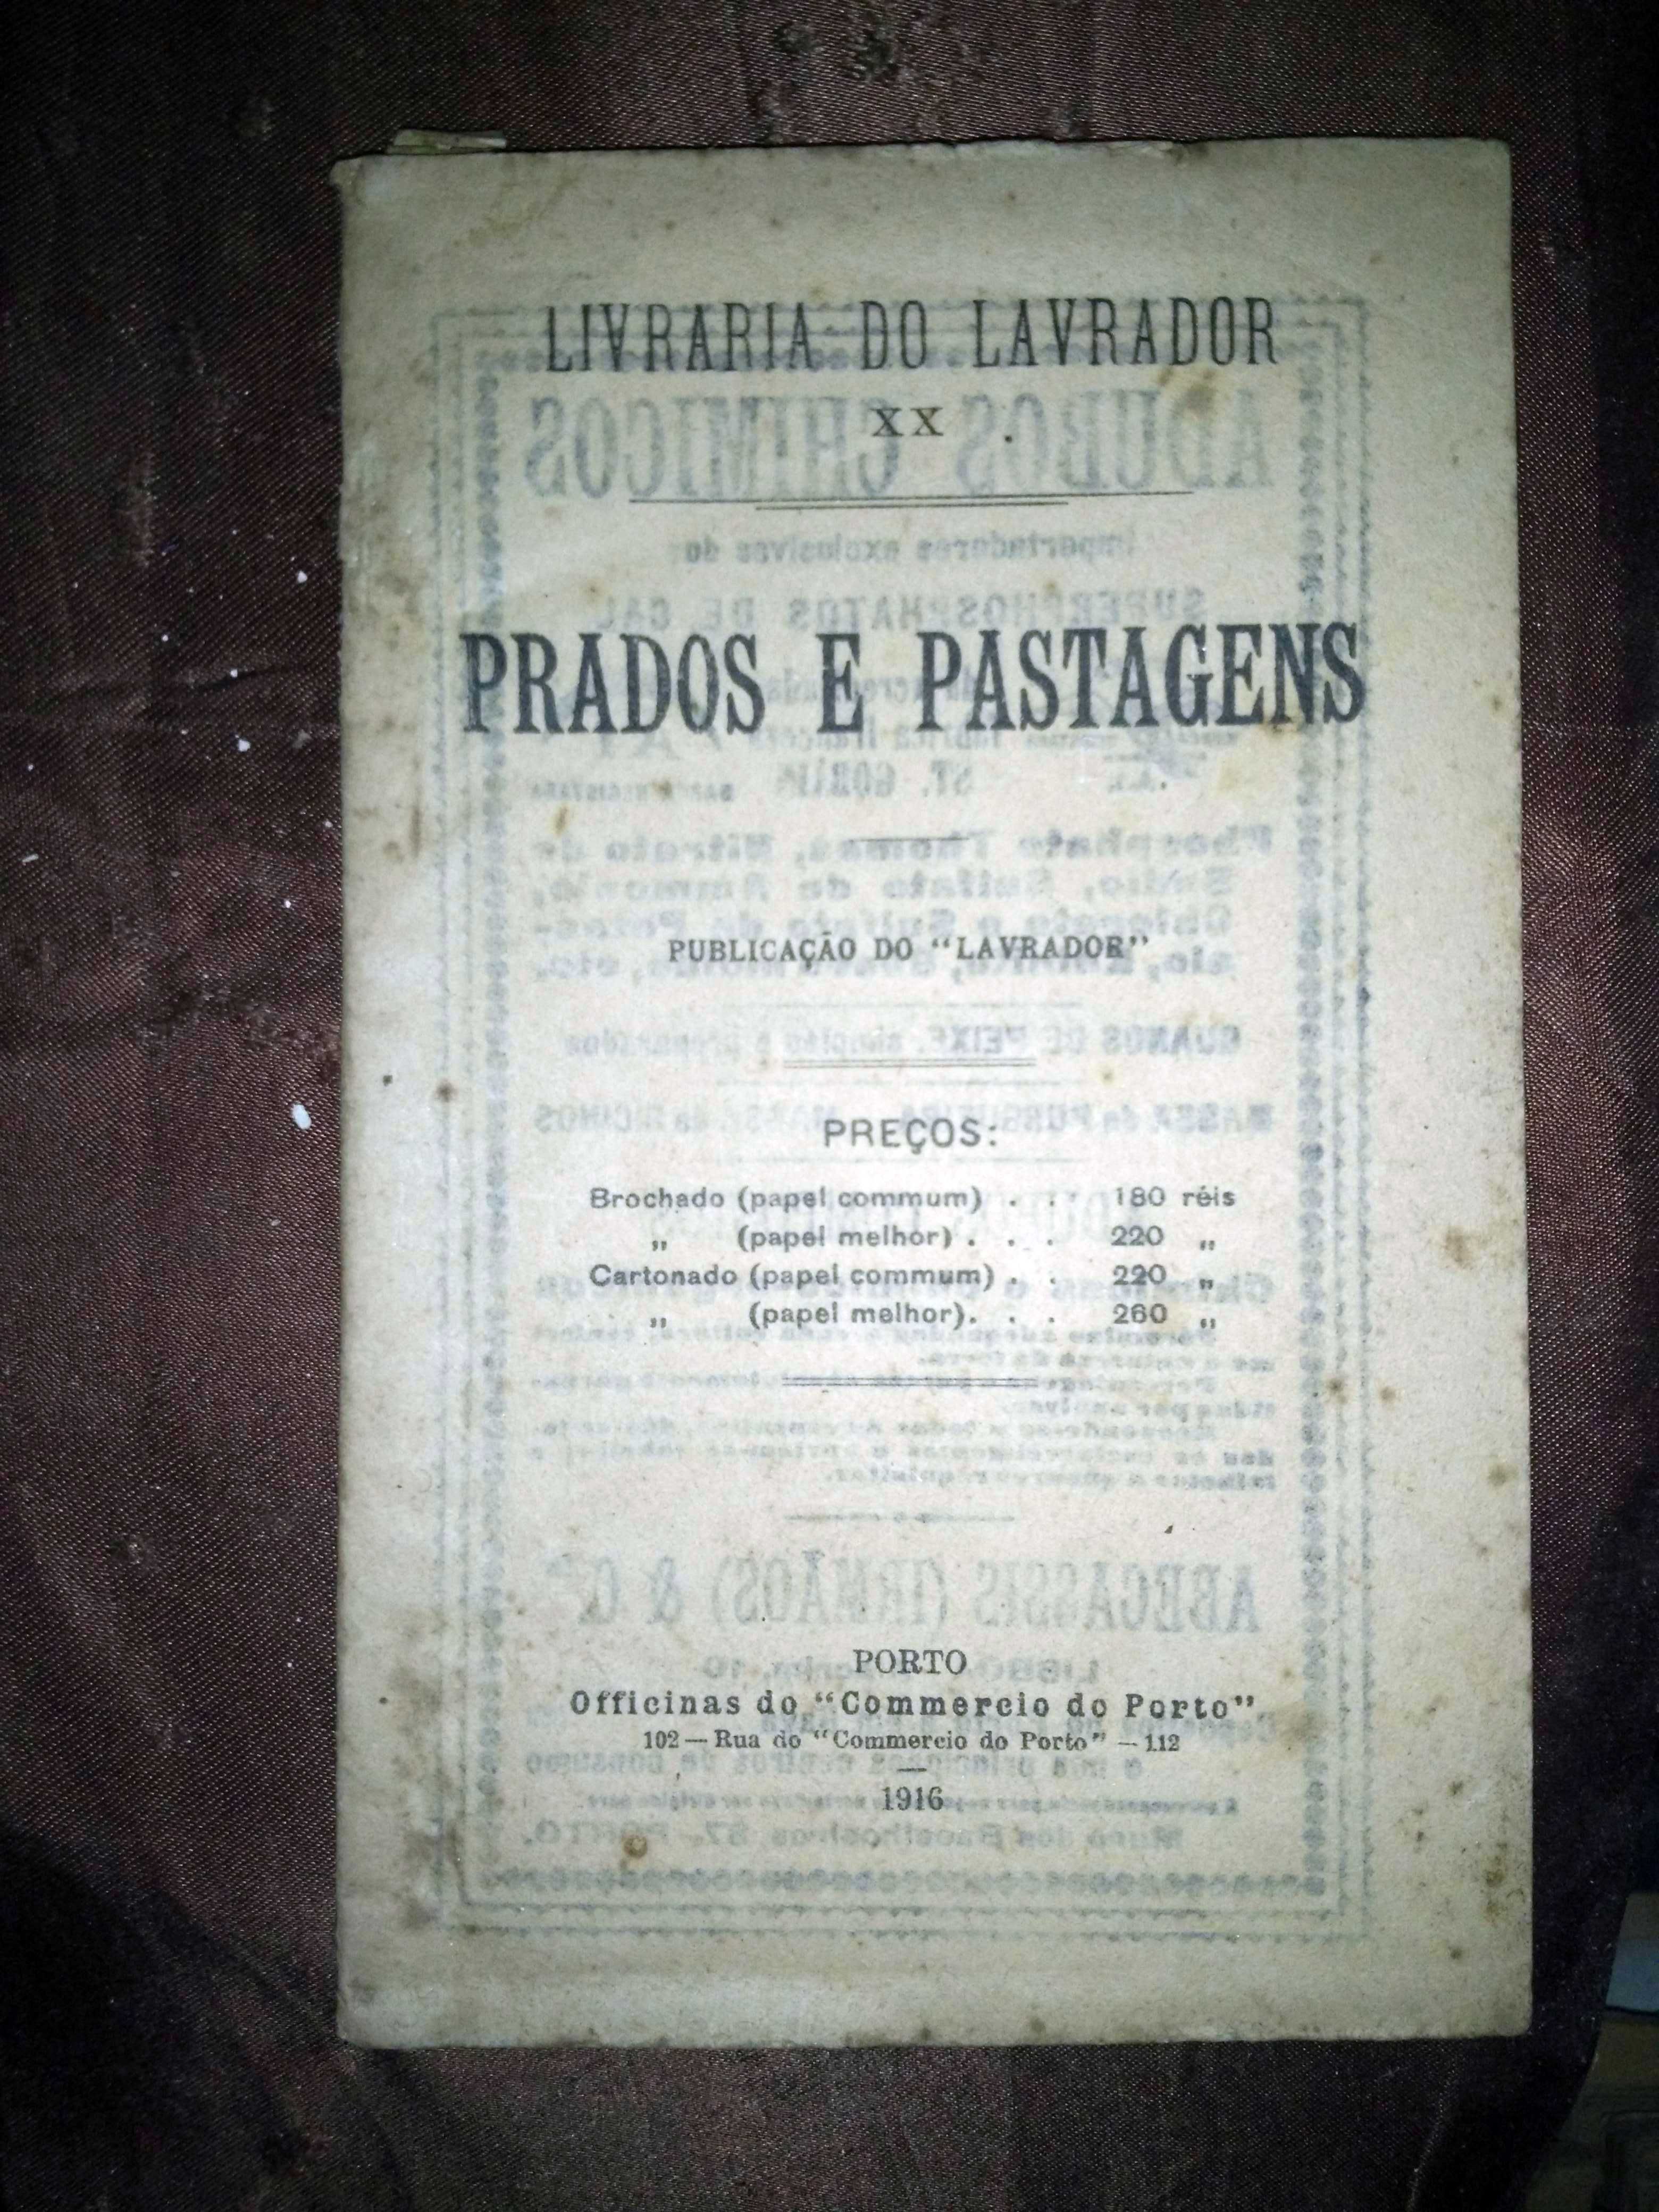 Prados e Pastagens - Livraria do Lavrador (1916)